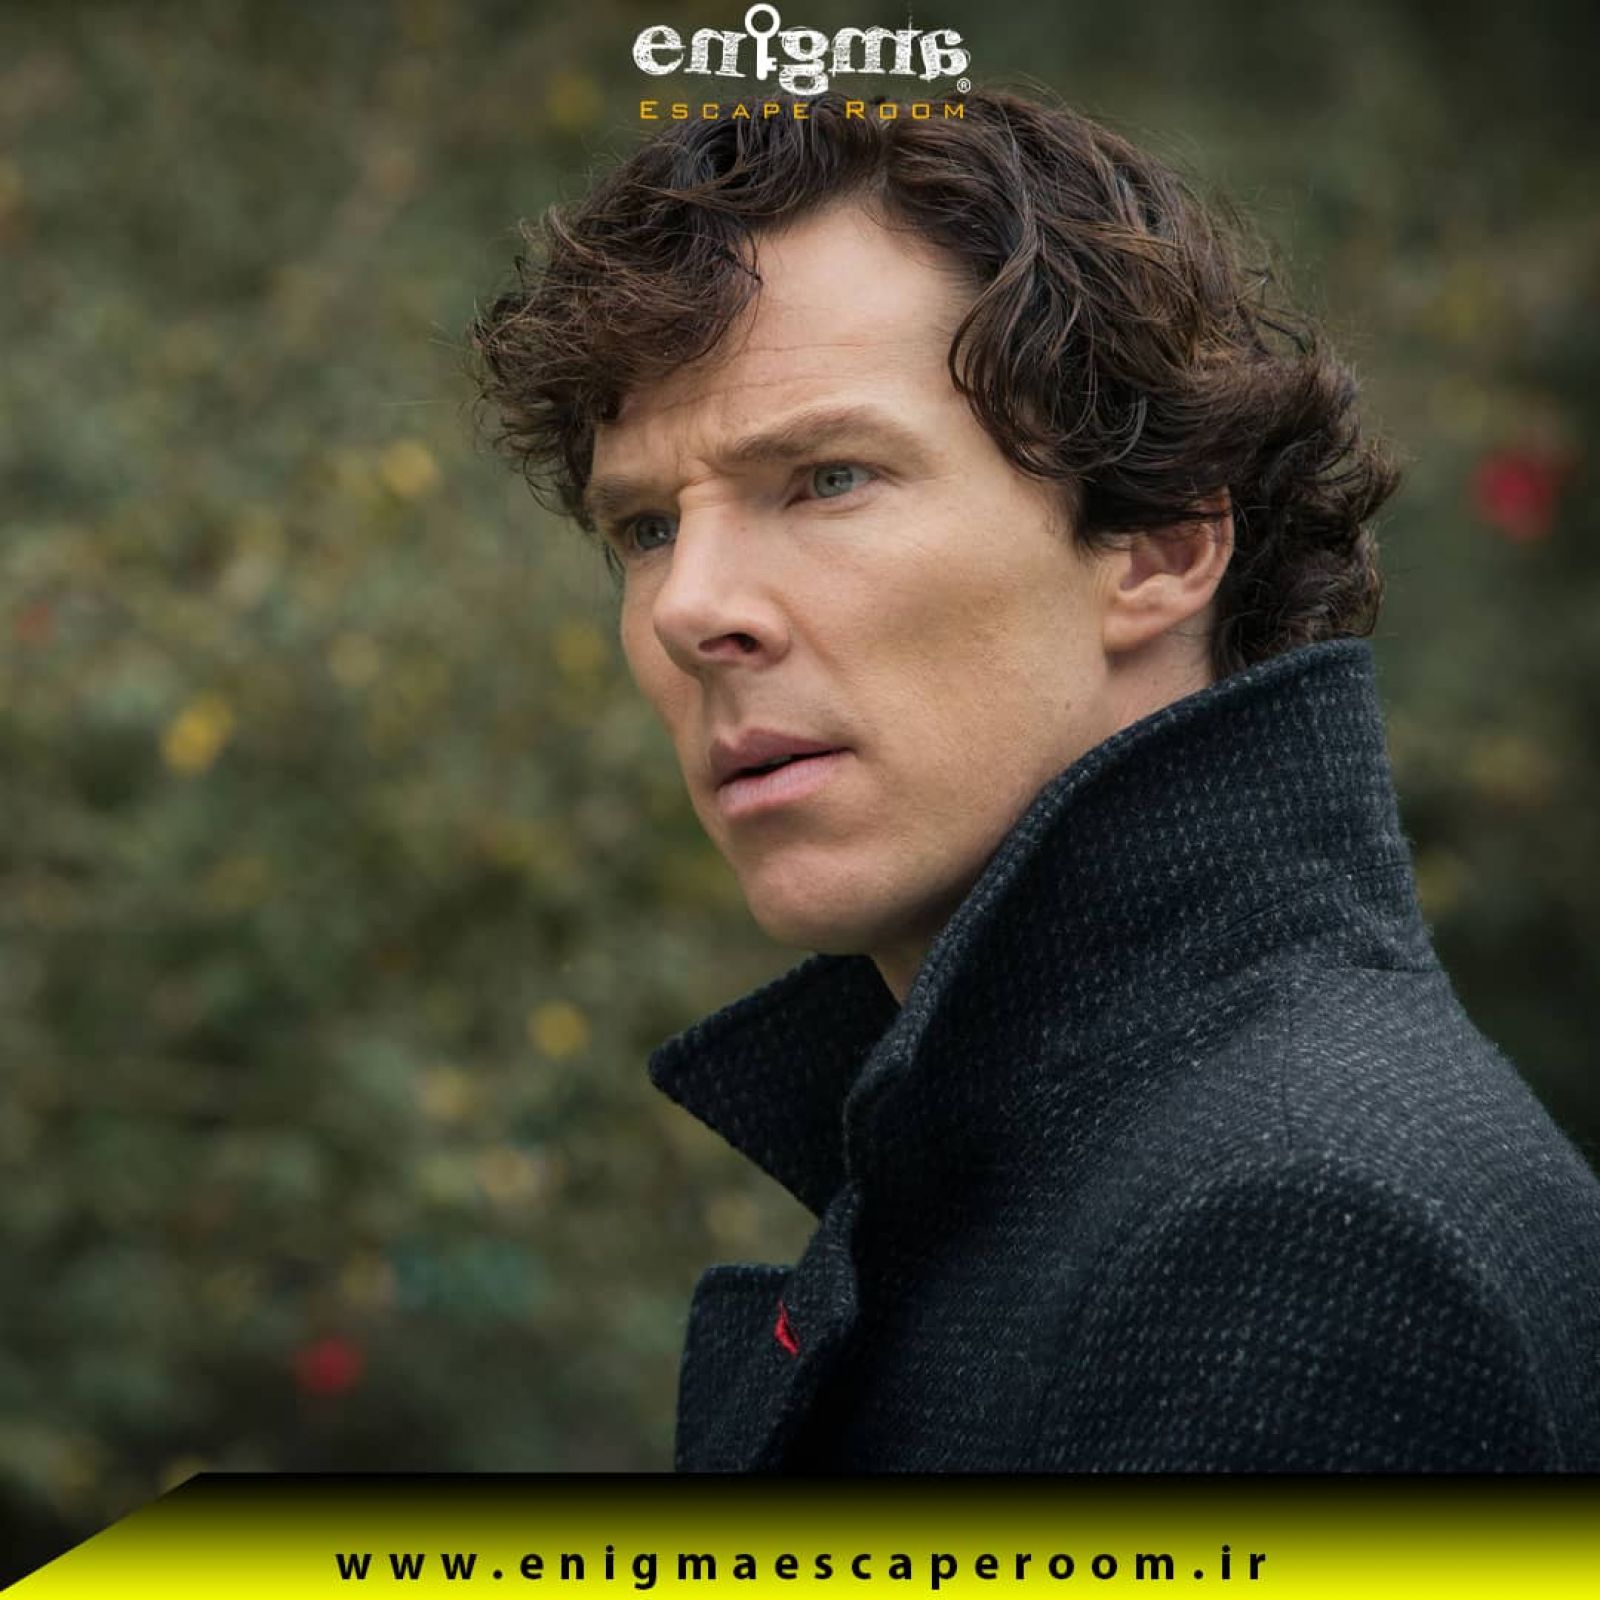 جذابترین معماهای شرلوک هلمز